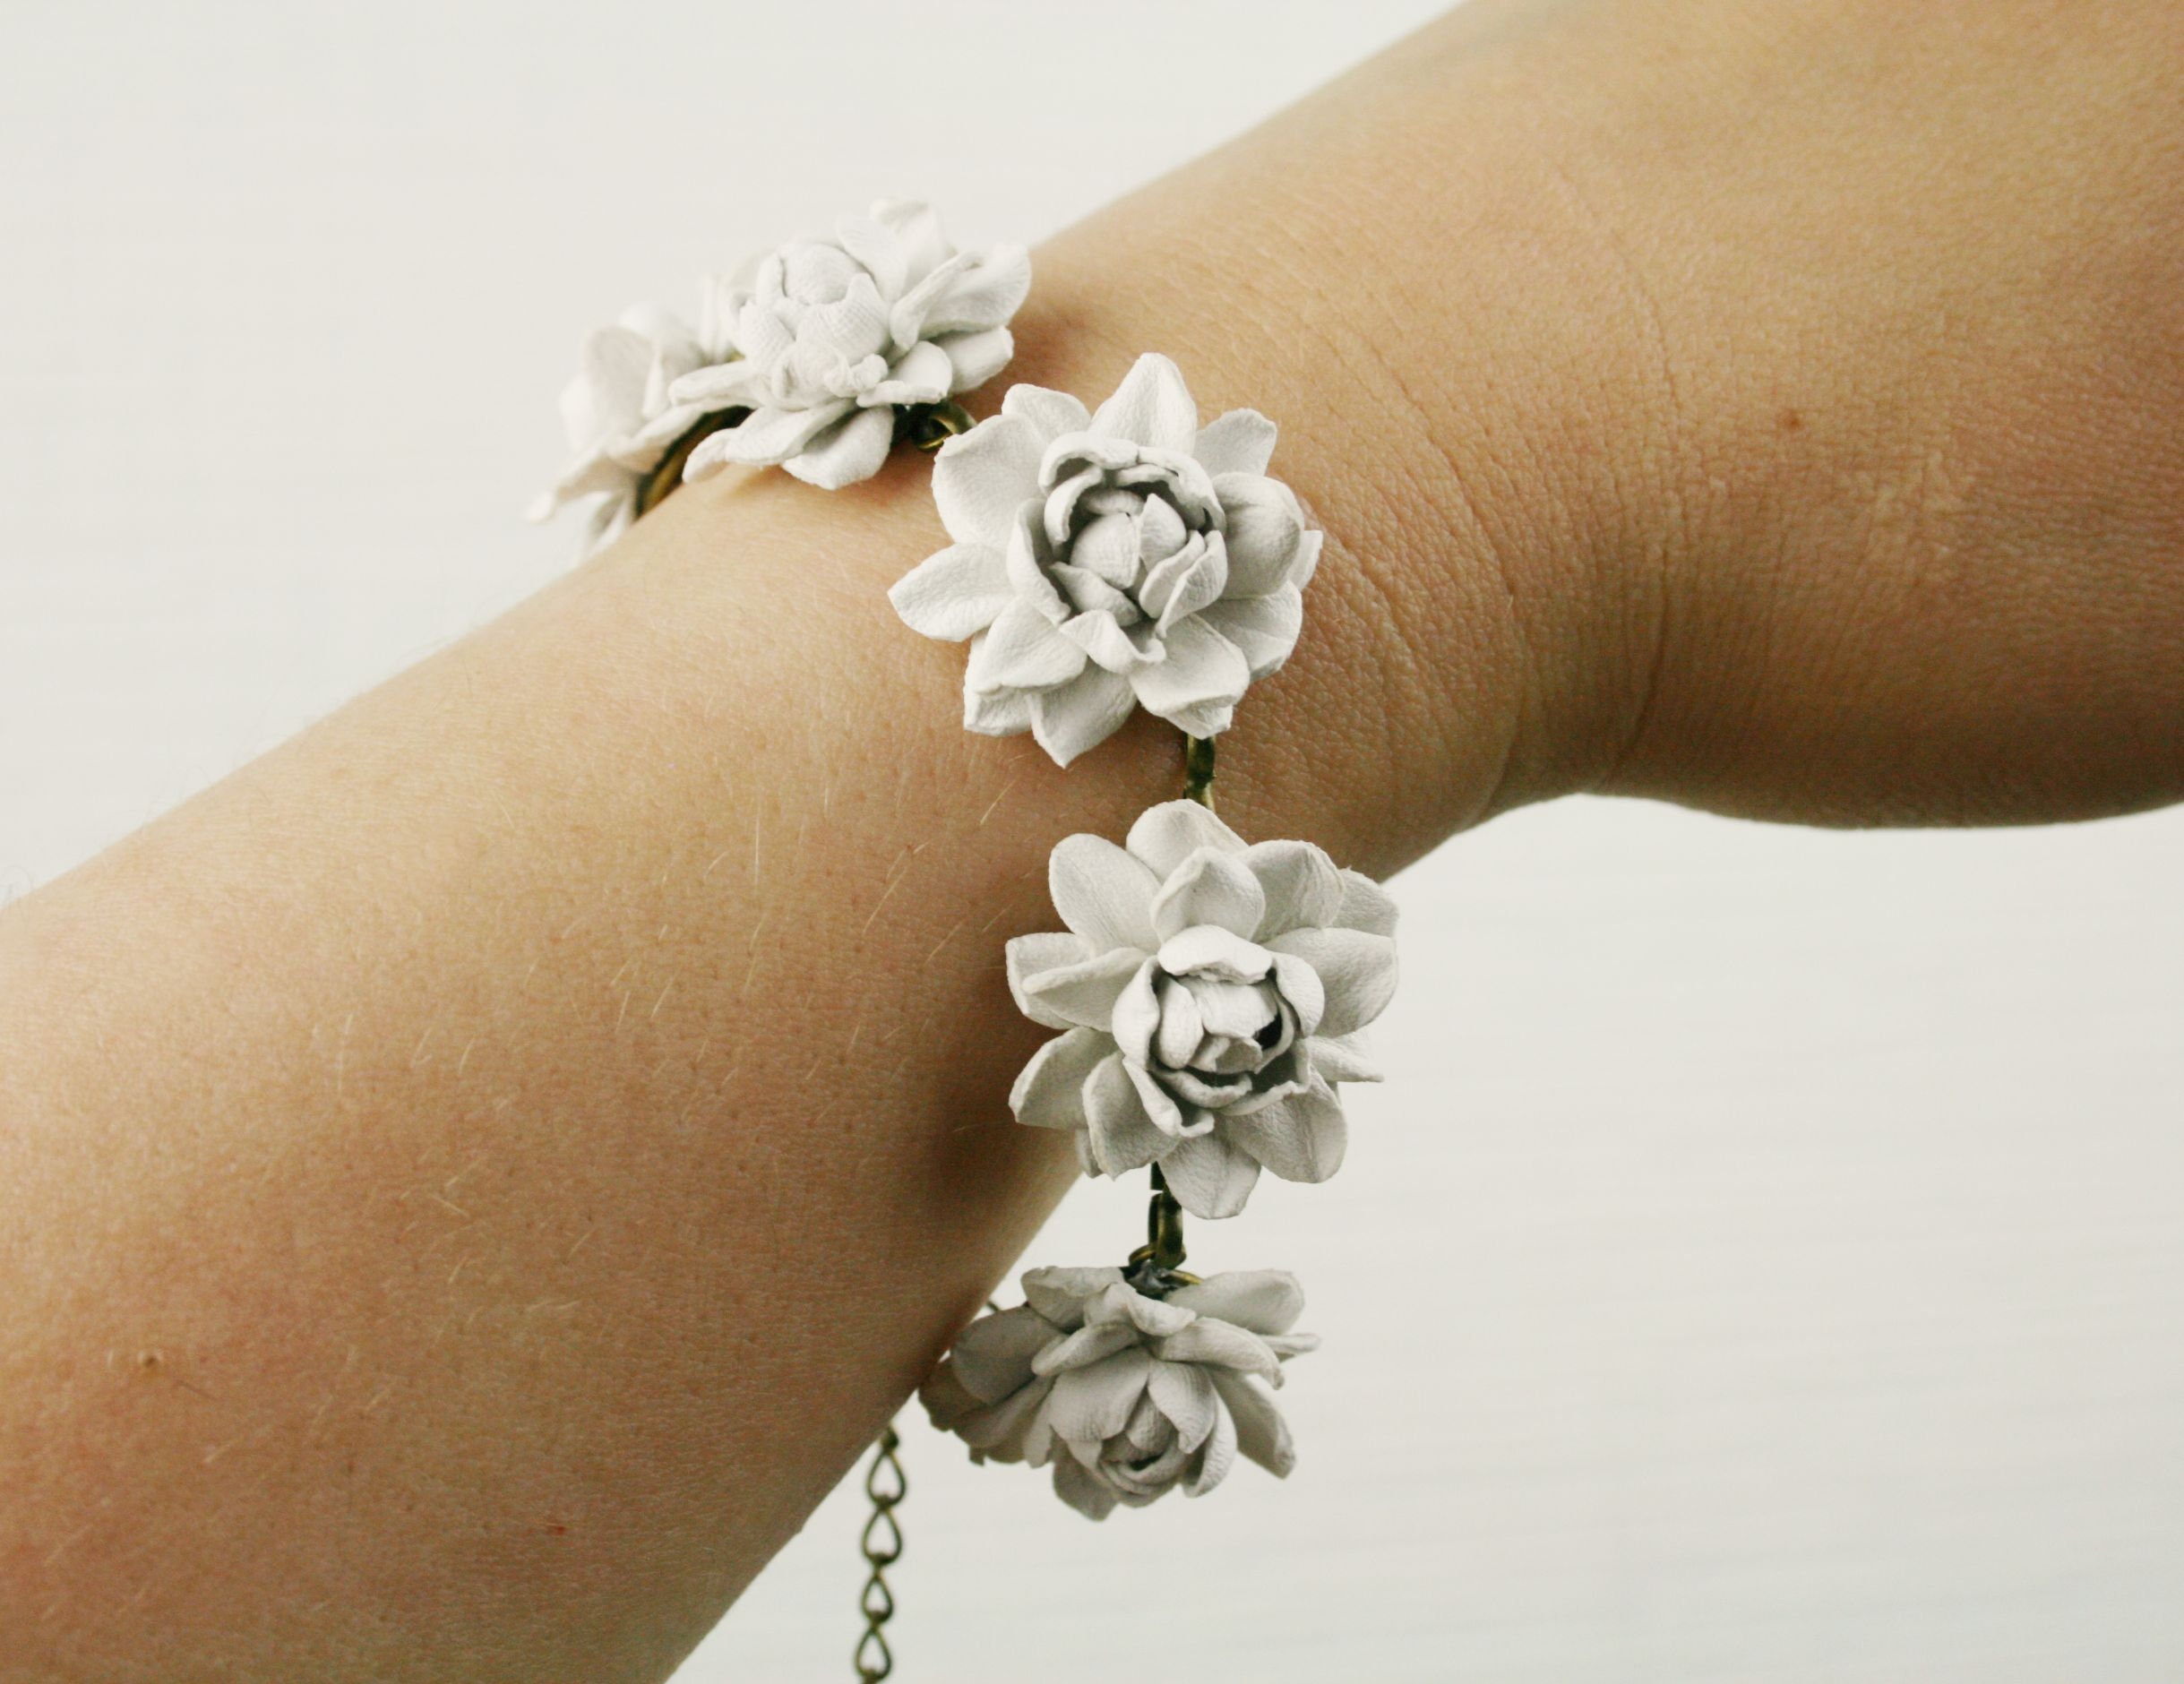 Цветок браслет купить. Цветочный браслет. Браслет с цветочками. Цветочный браслет на руку. Браслет цветочком белый.